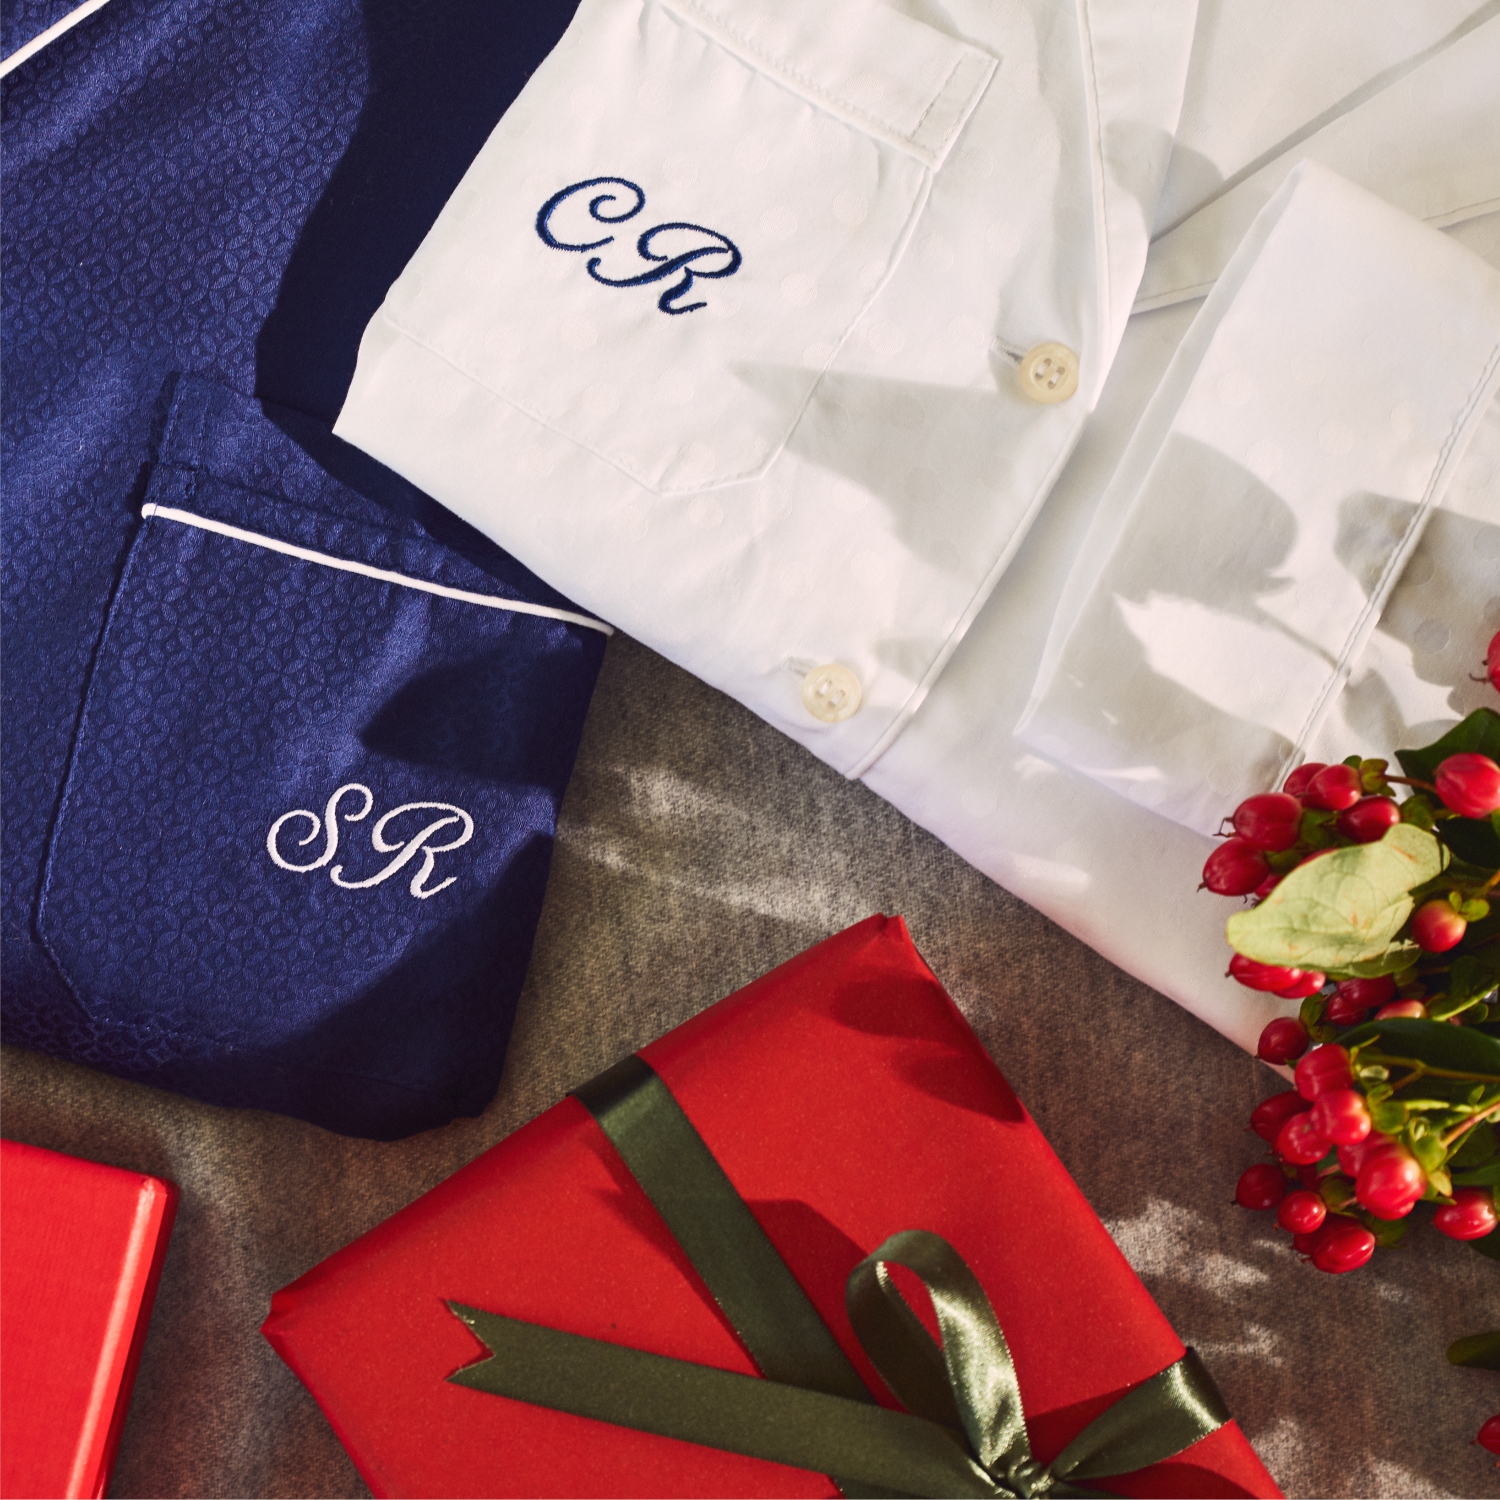 Выбирайте стильные новогодние подарки от X.O с персонализированной вышивкой!